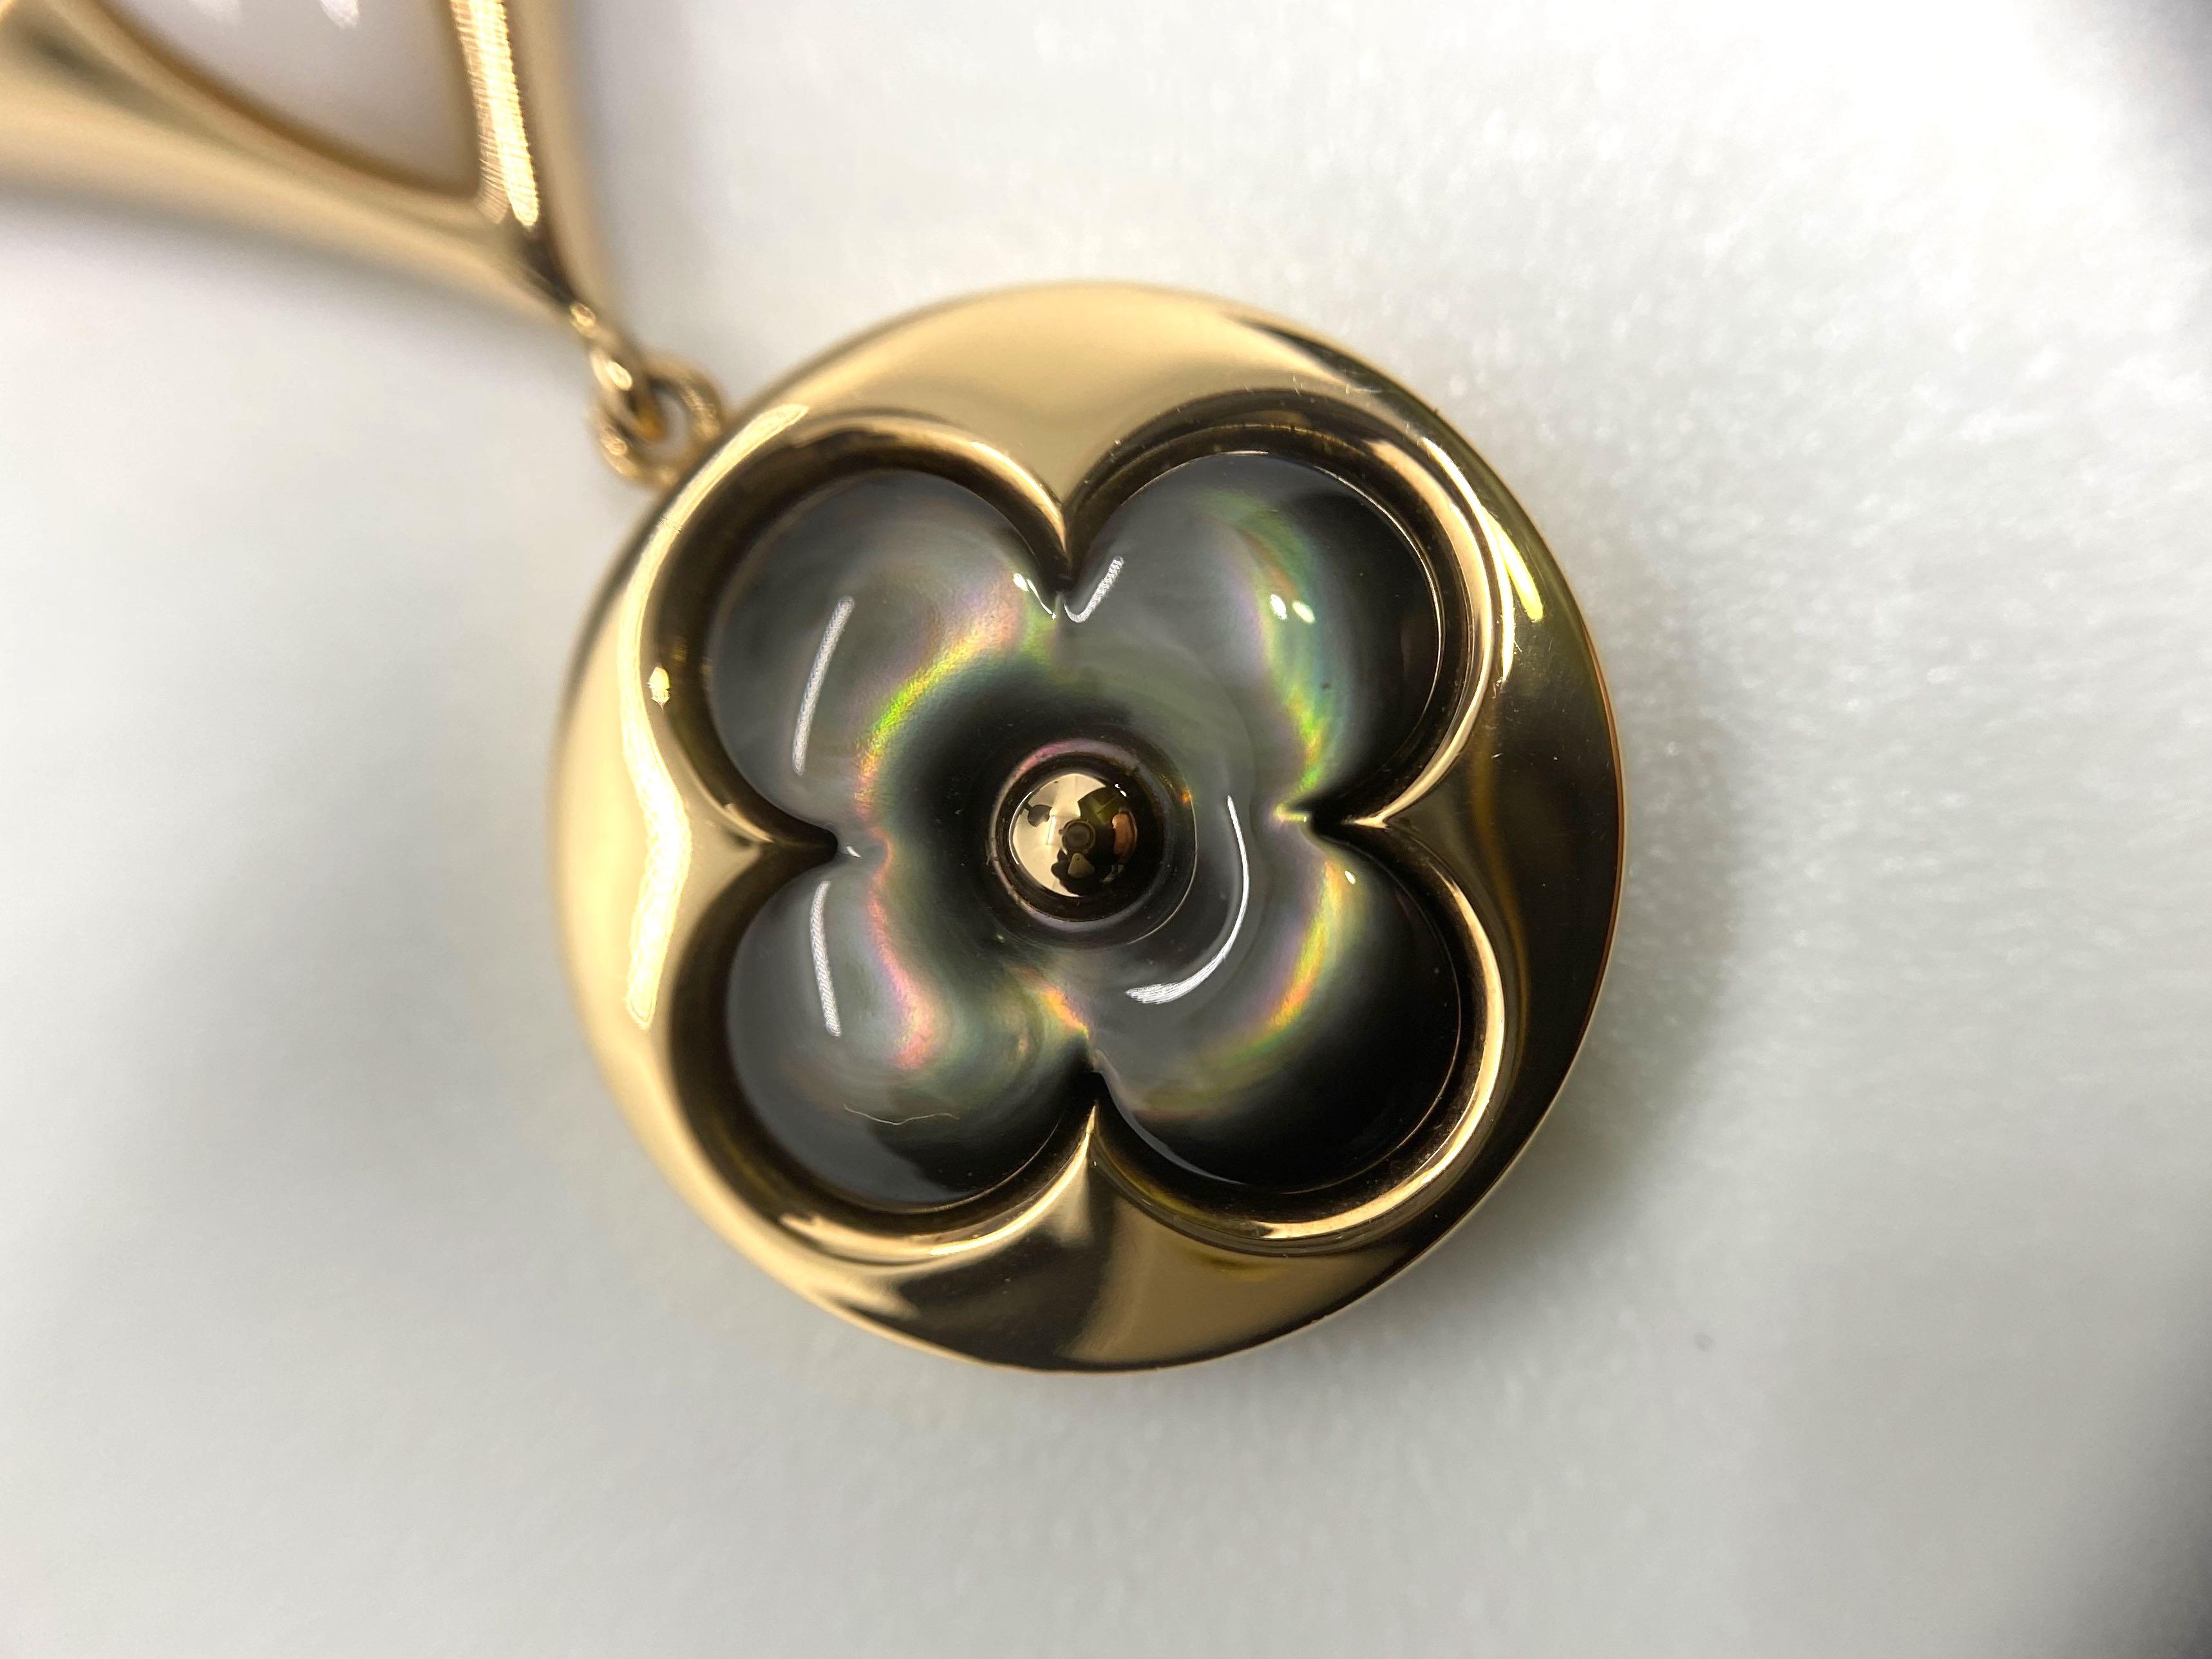 Louis Vuitton Color Blossom Lariat Pendant Necklace 18K Rose Gold